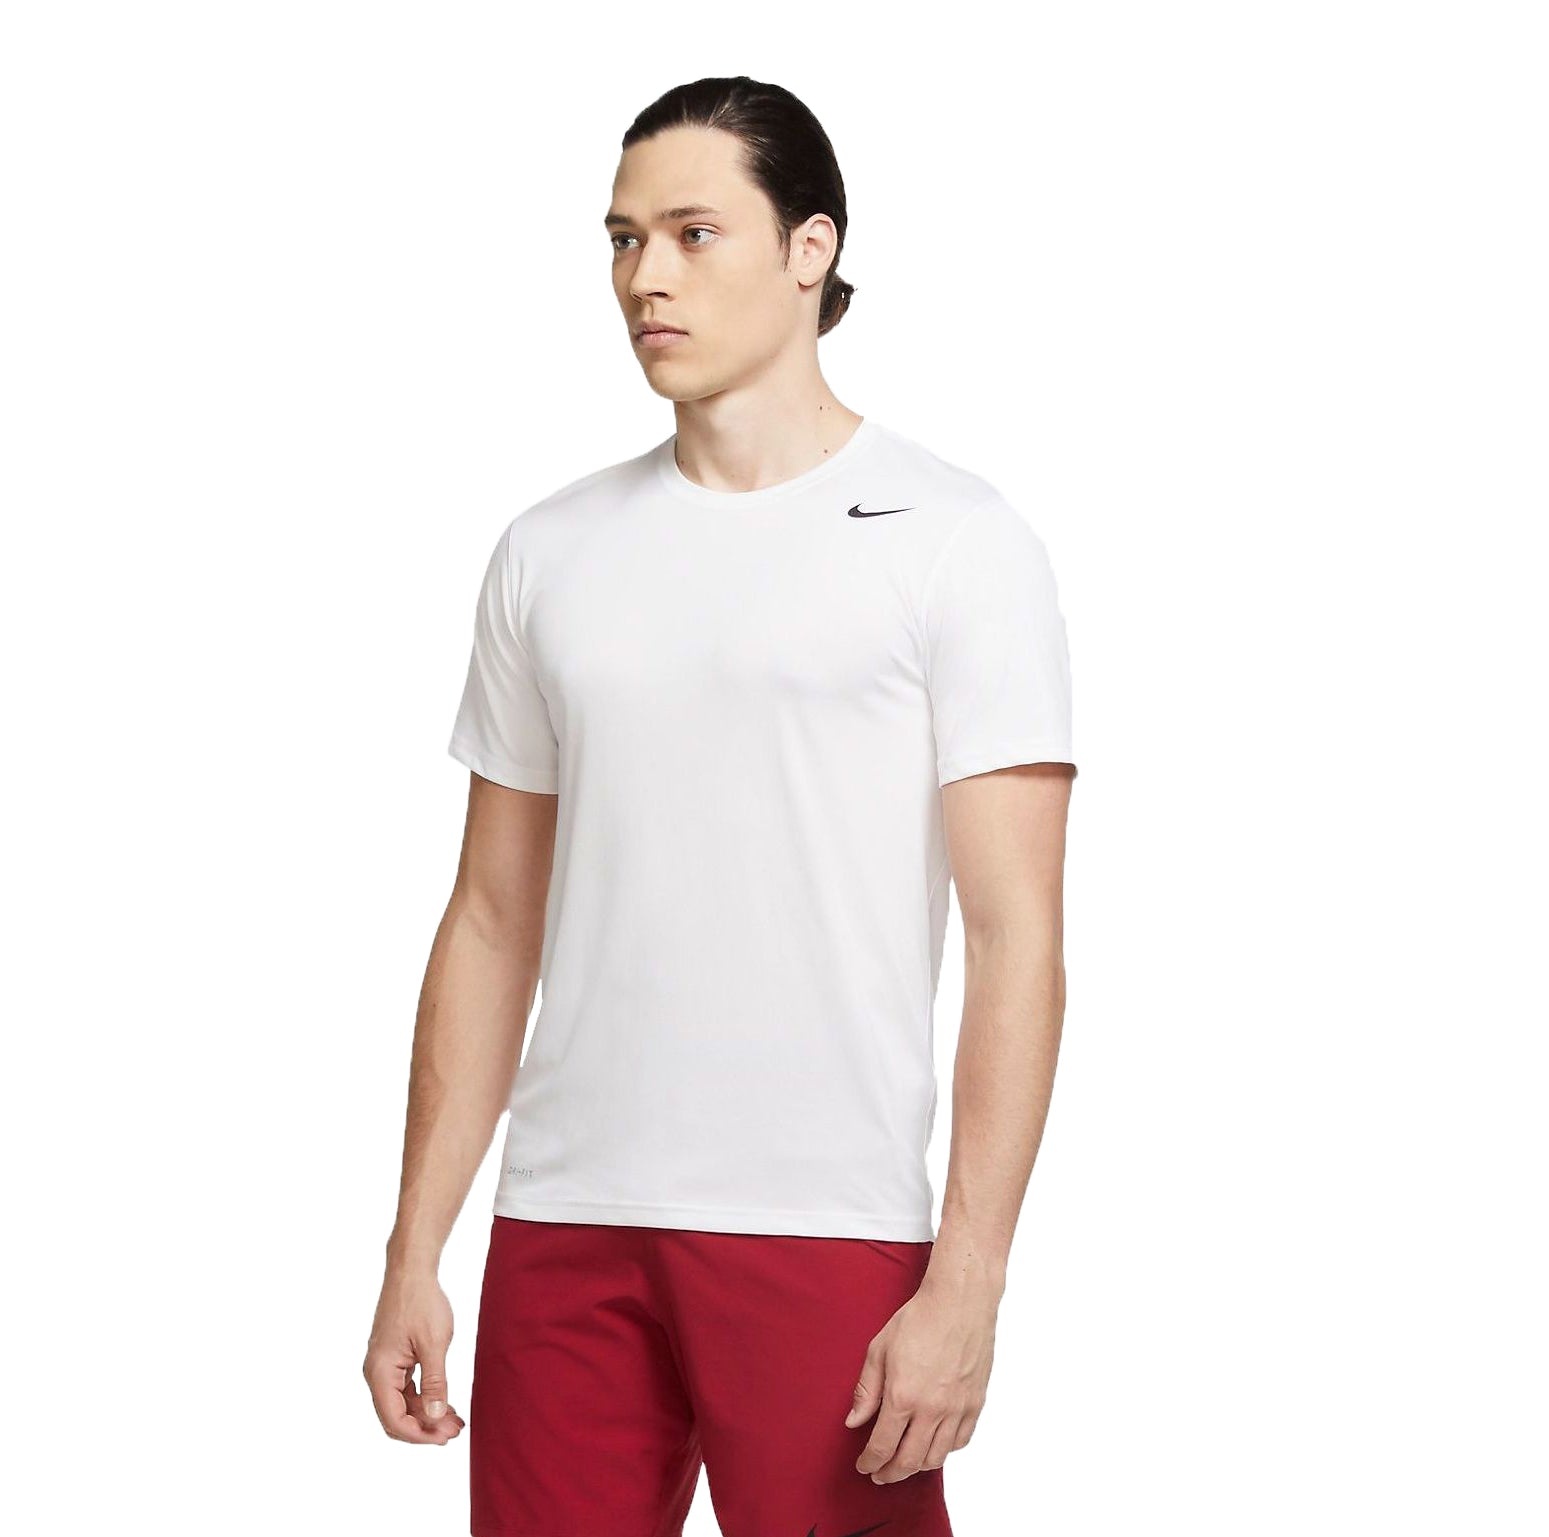 Nike Dri-FIT Legend Training T-shirt 'White' 718834-100 - 1